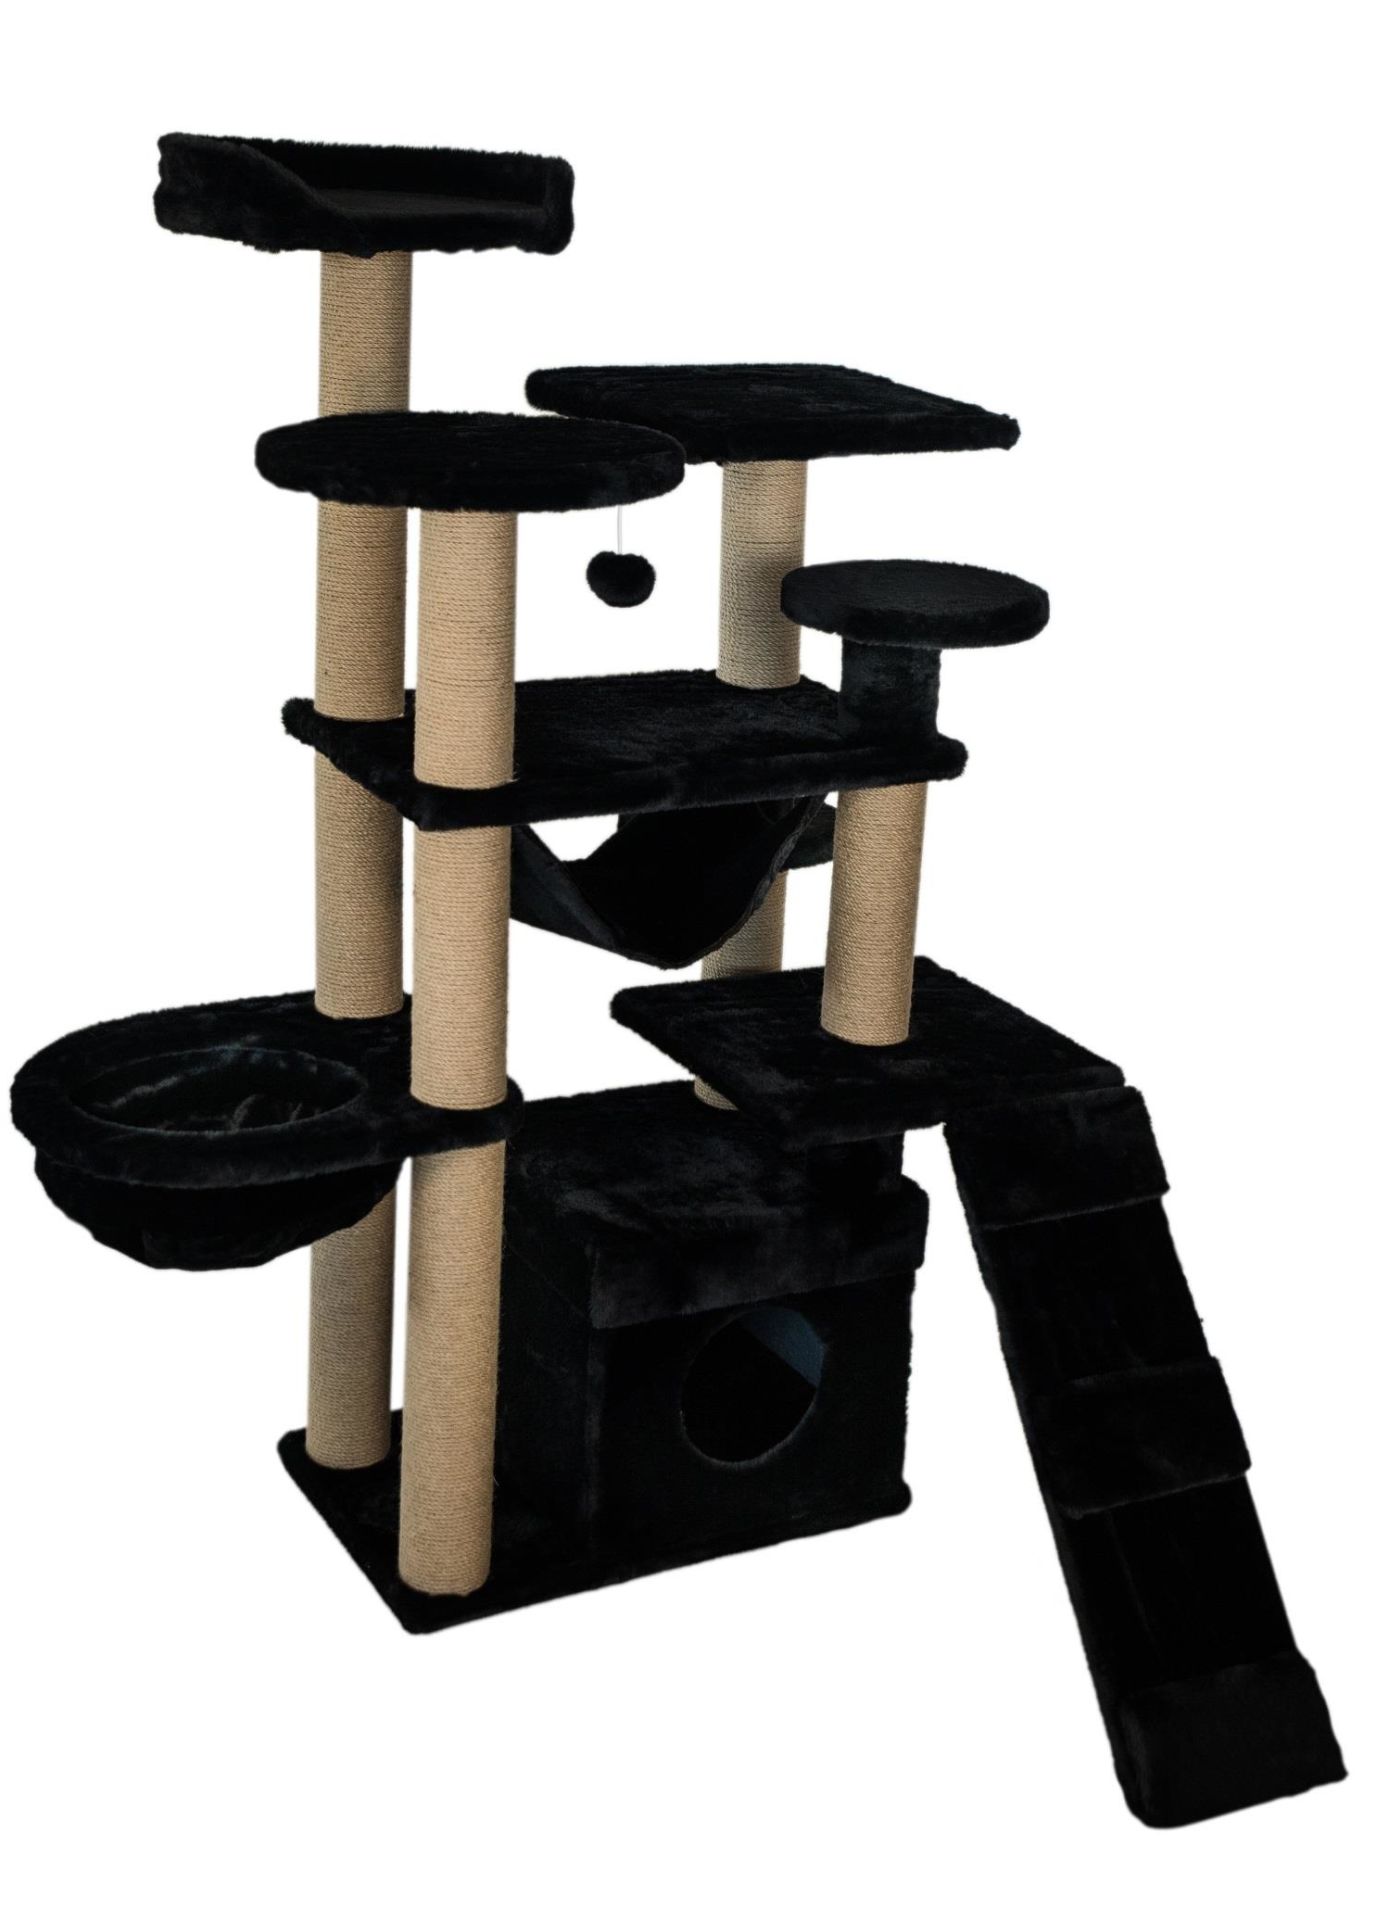 Dubex 122x108x144 cm Kedi Oyun Evi ve Tırmalama Platformu Siyah